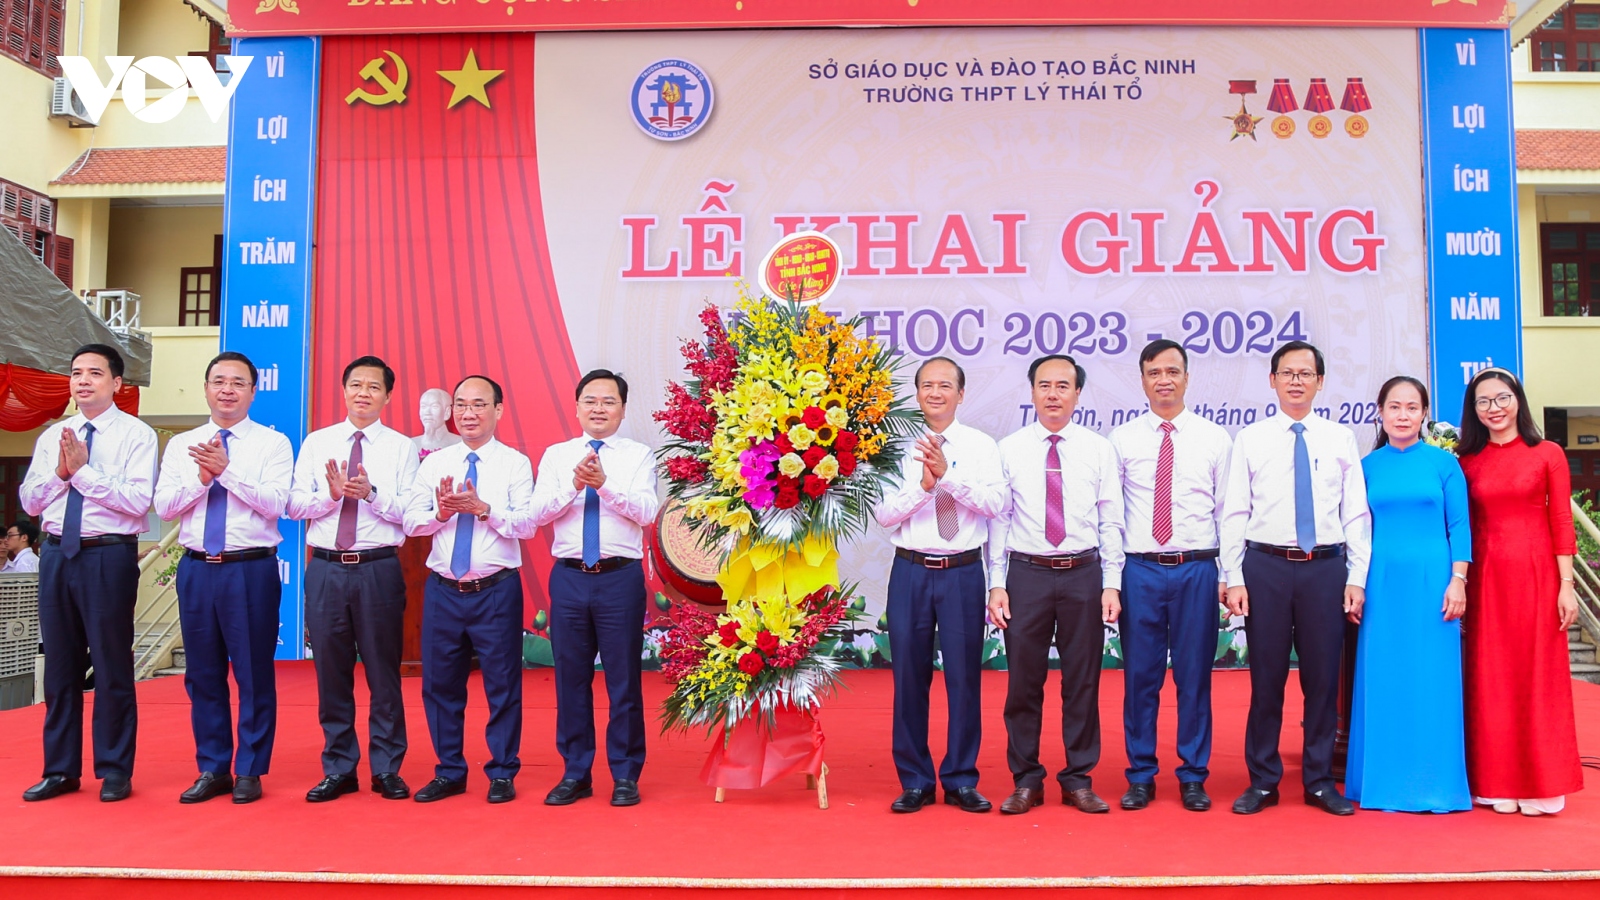 Bắc Ninh, Bắc Giang tưng bừng khai giảng năm học mới